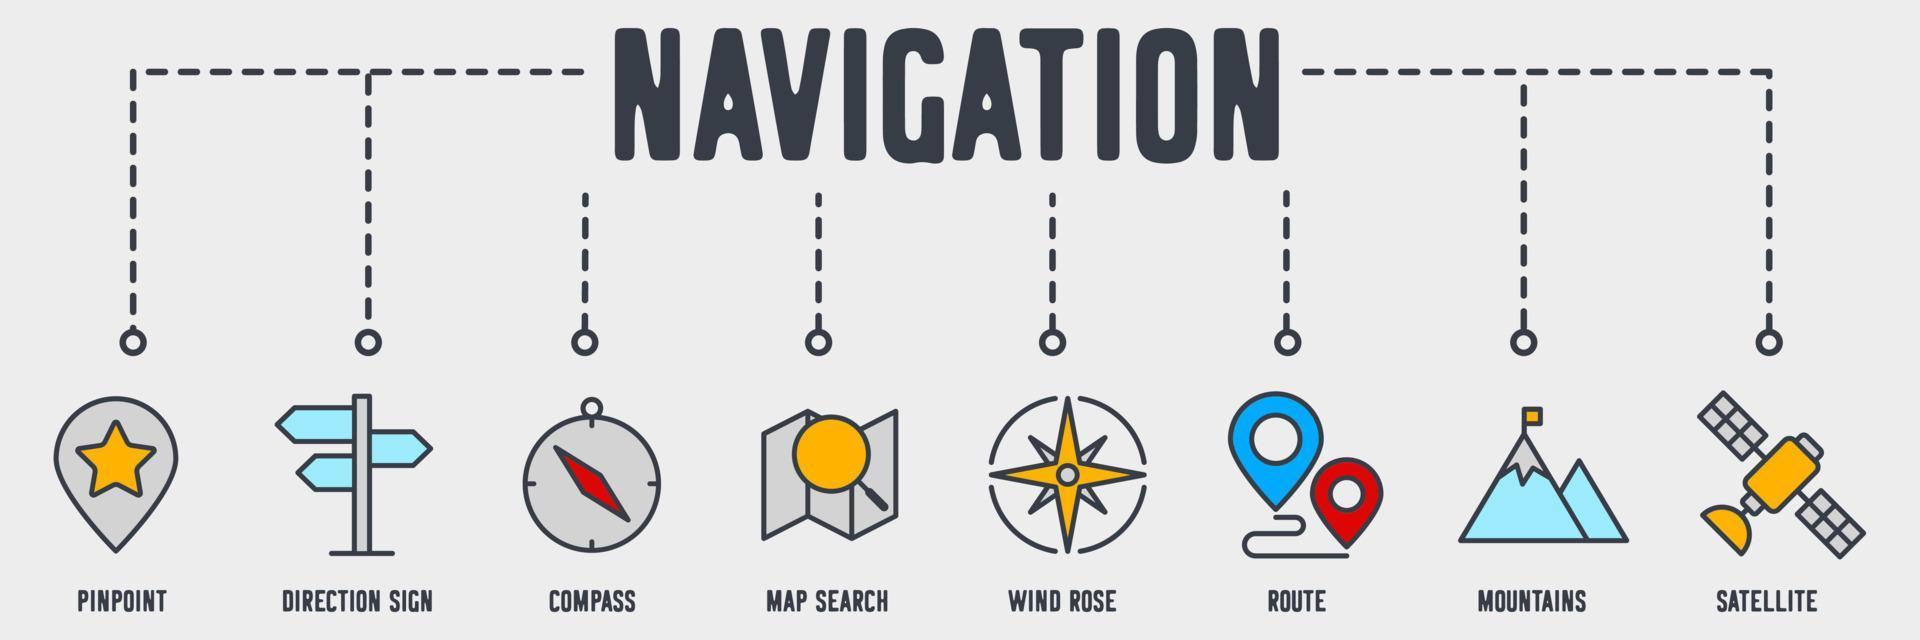 Ubicación del mapa e icono de la web del banner de navegación. señalar, señal de dirección, brújula, búsqueda de mapa, rosa de los vientos, ruta, montañas, concepto de ilustración de vector de satélite.